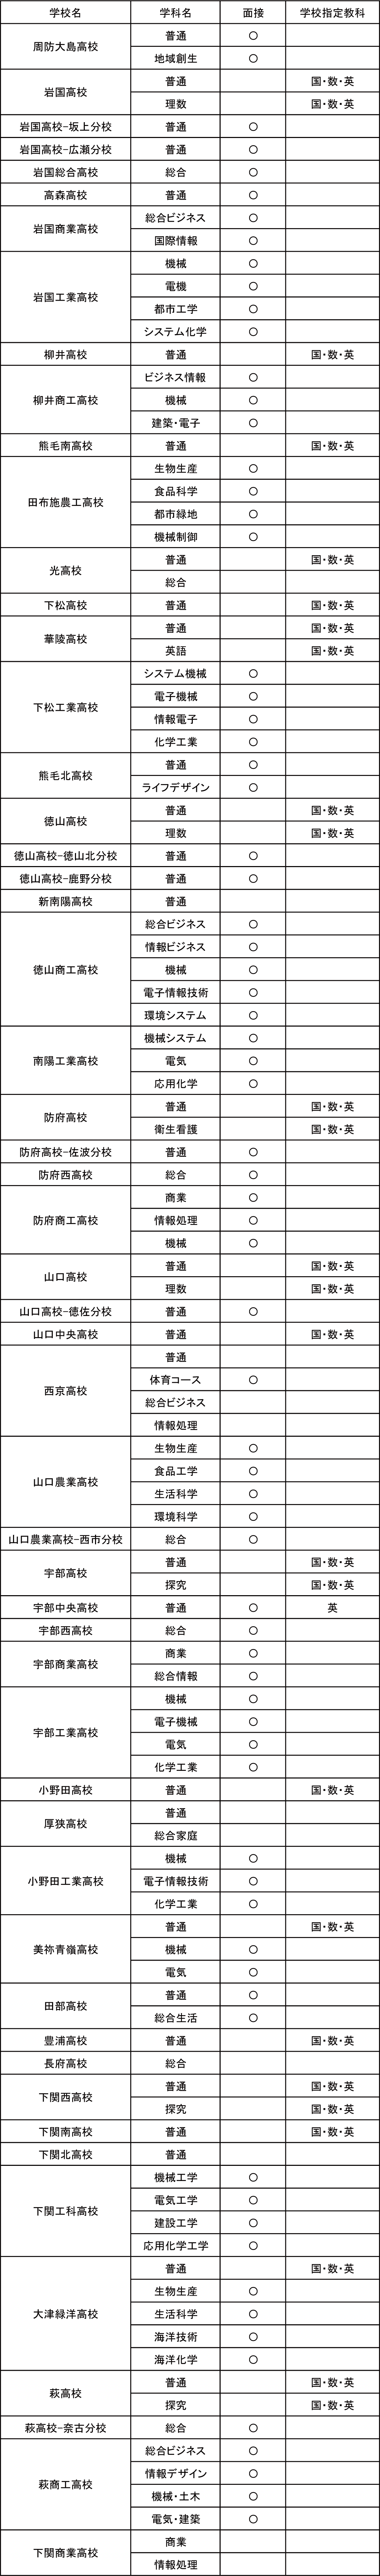 山口県 高校入試21 ボーダーライン 偏差値 家庭教師のagent